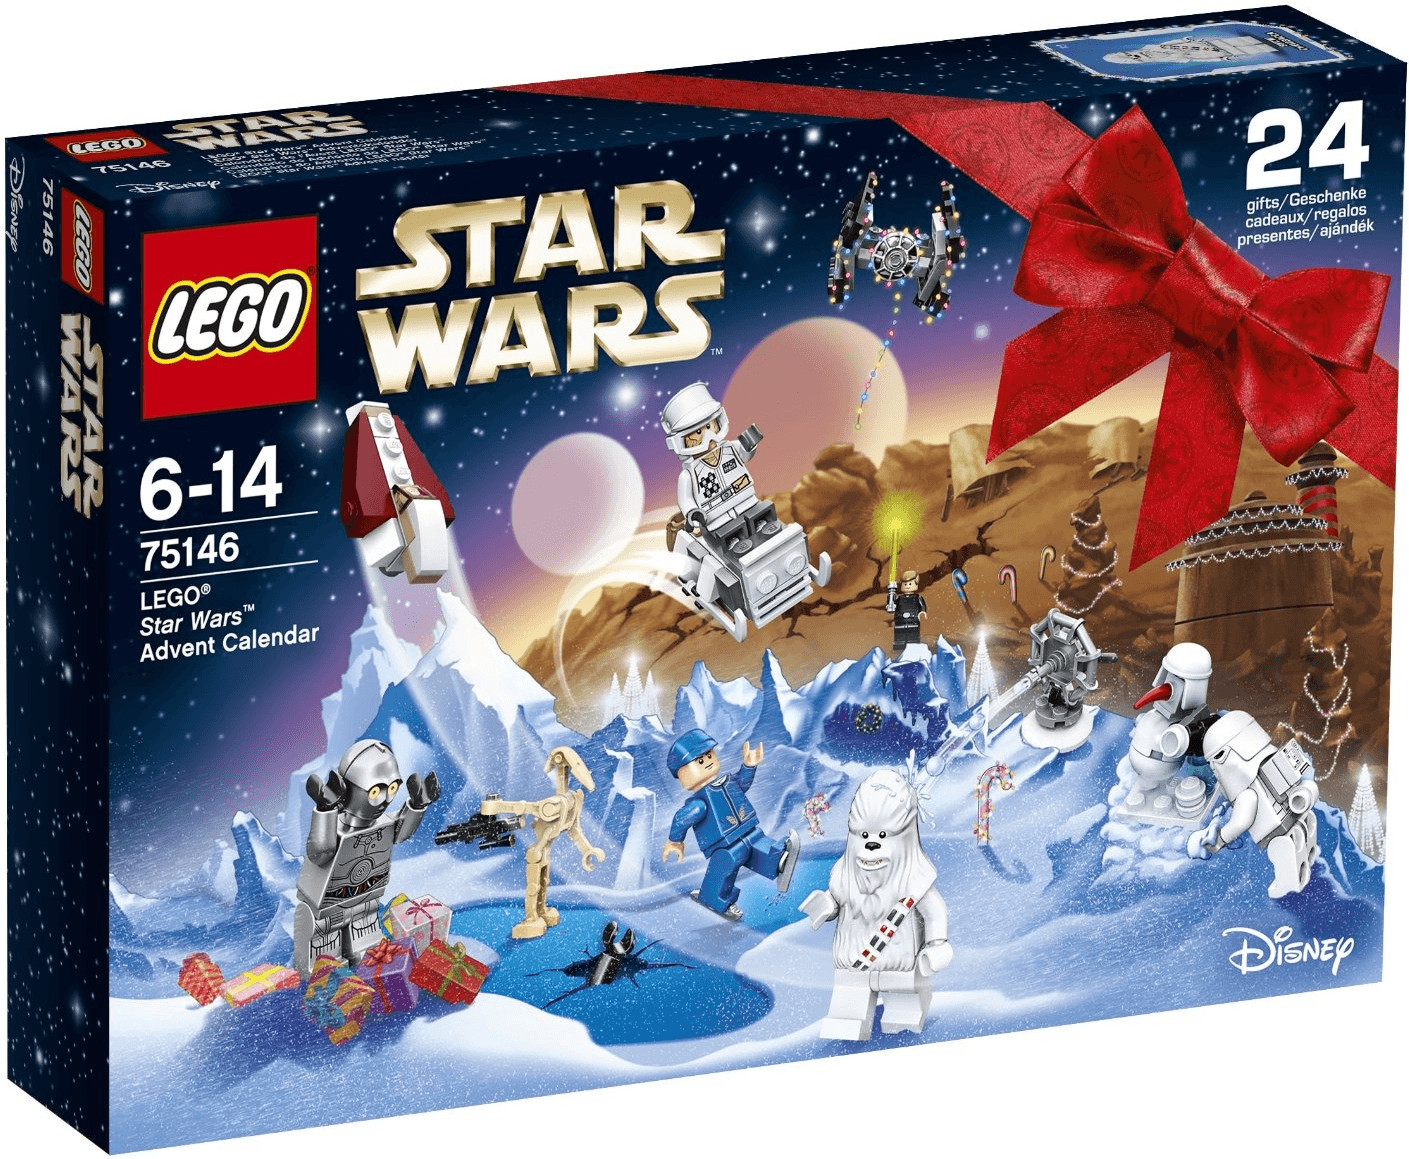 LEGO Star Wars Advent Calendar 2016 (75146)